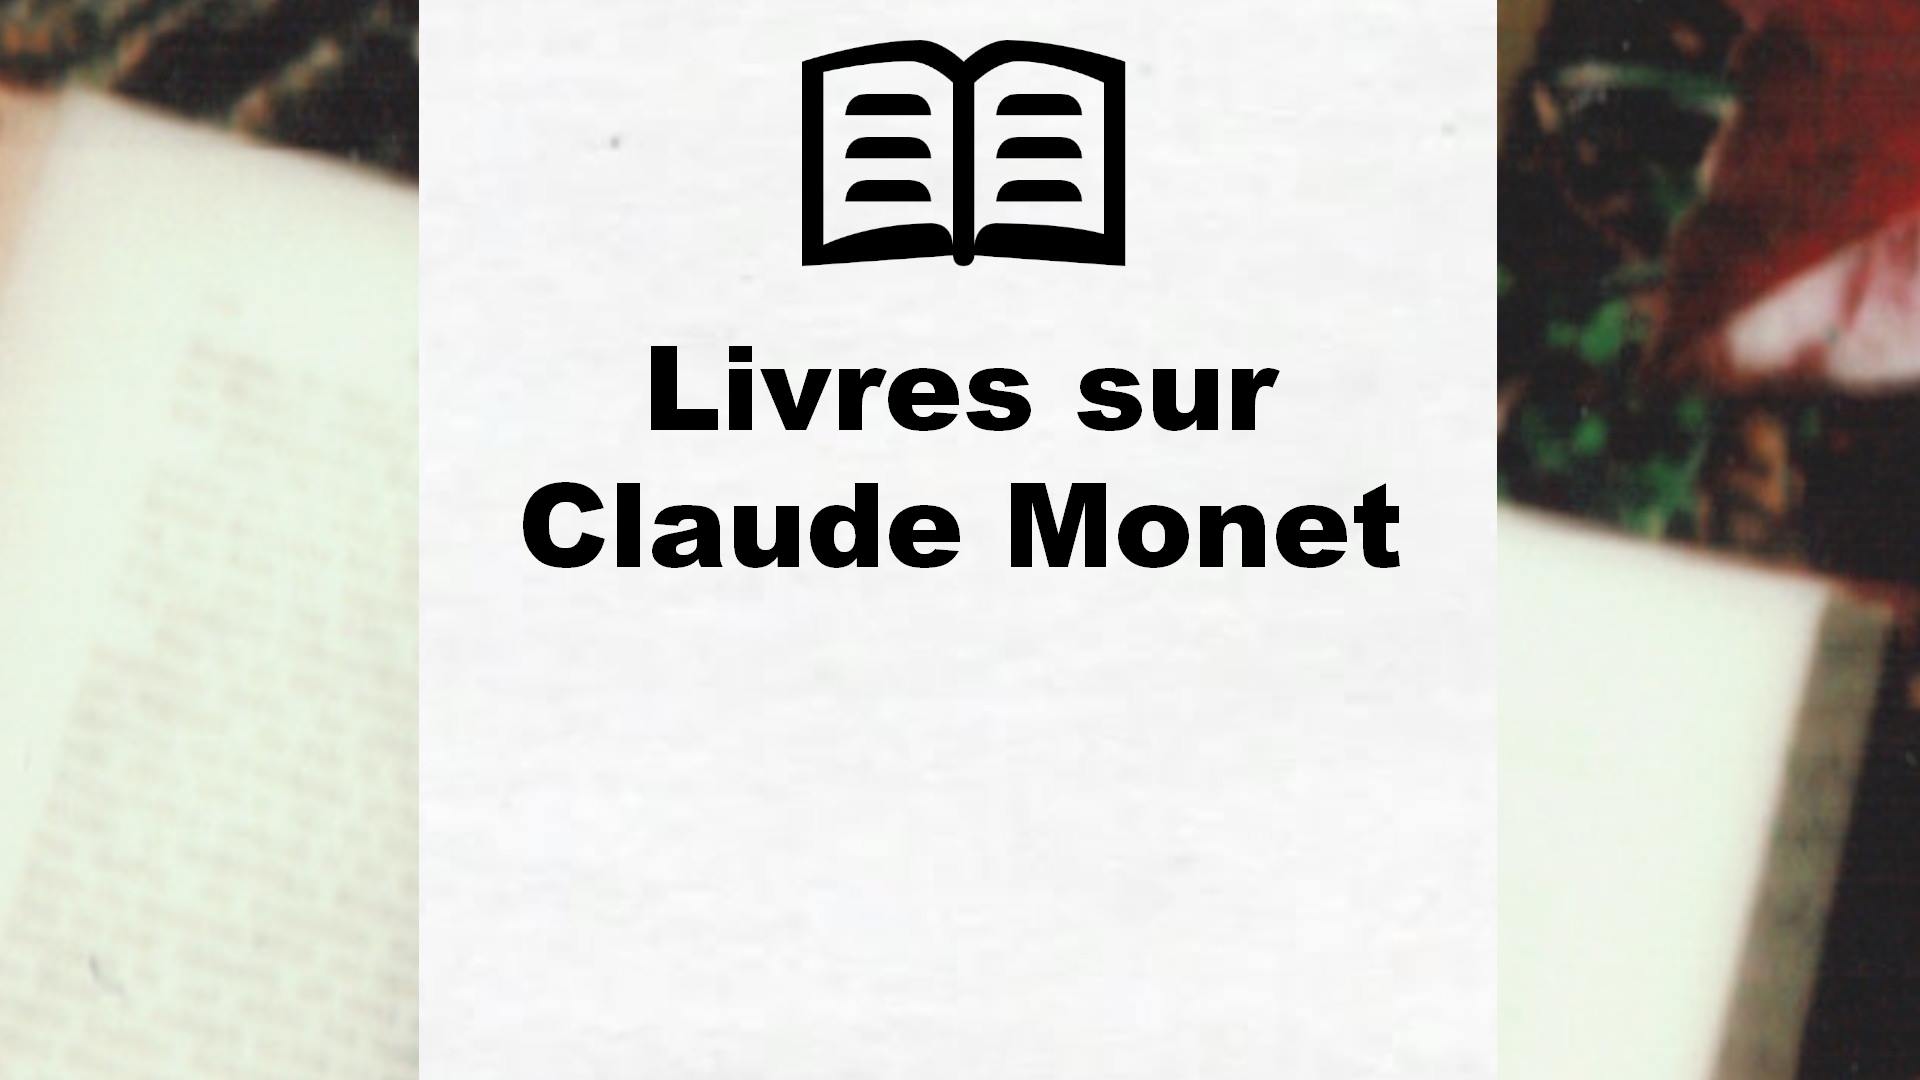 Livres sur Claude Monet